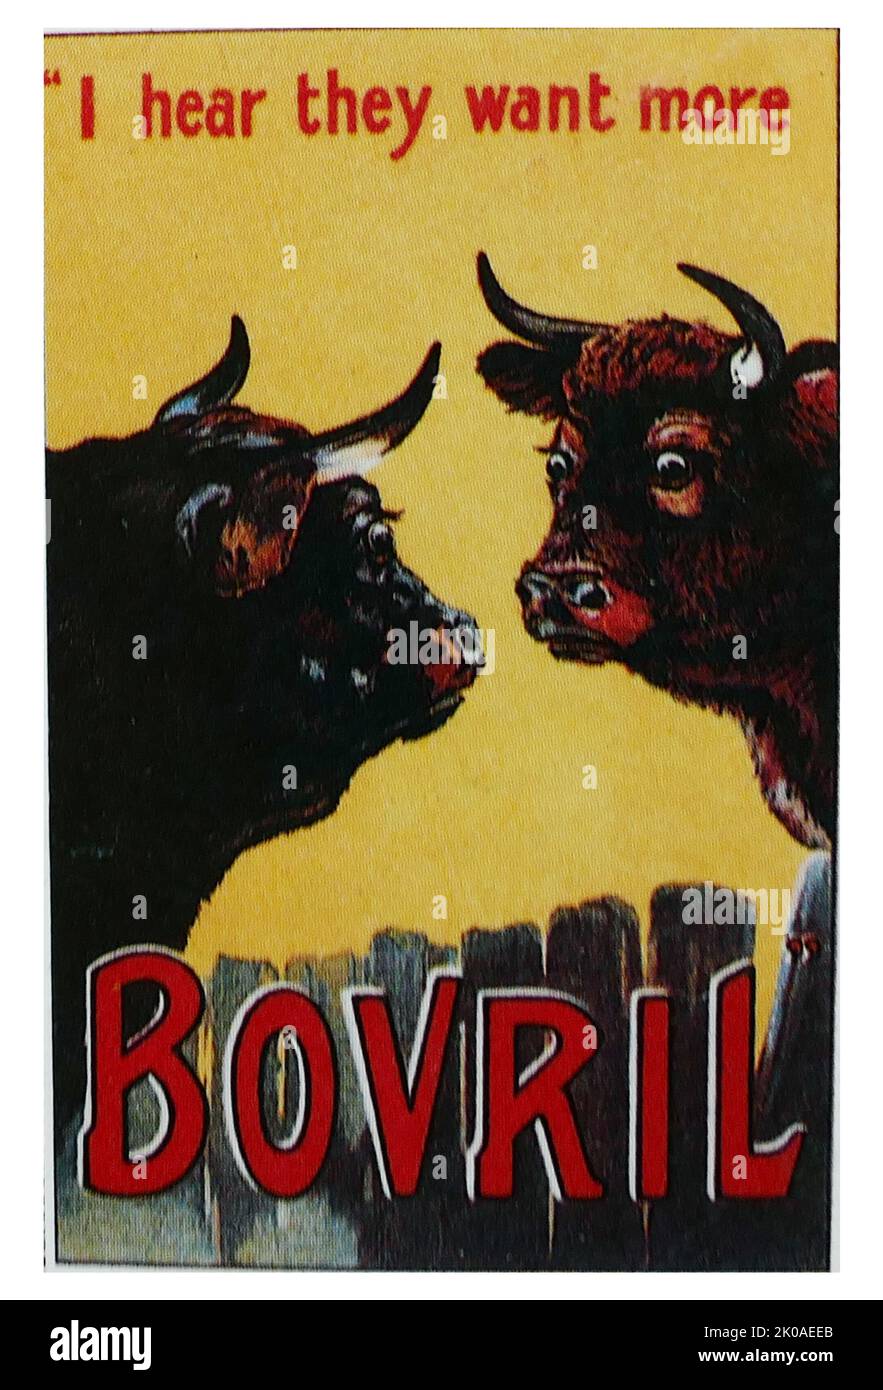 Publicité pour Bovril (12930), le nom de marque d'une pâte d'extrait de viande épaisse et salée semblable à un extrait de levure, développé en 1870s par John Lawson Johnston Banque D'Images